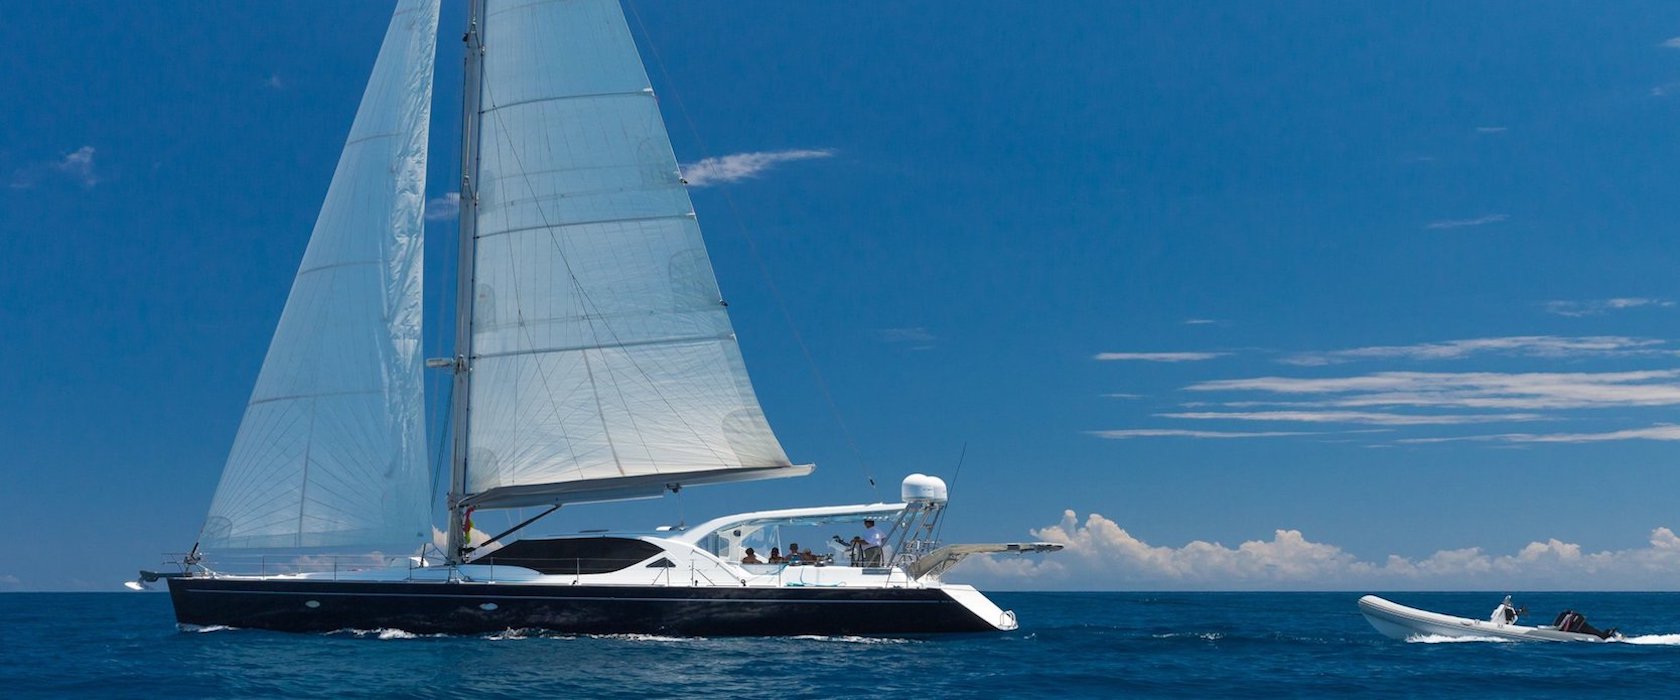 Whitsundays Luxury Sailing